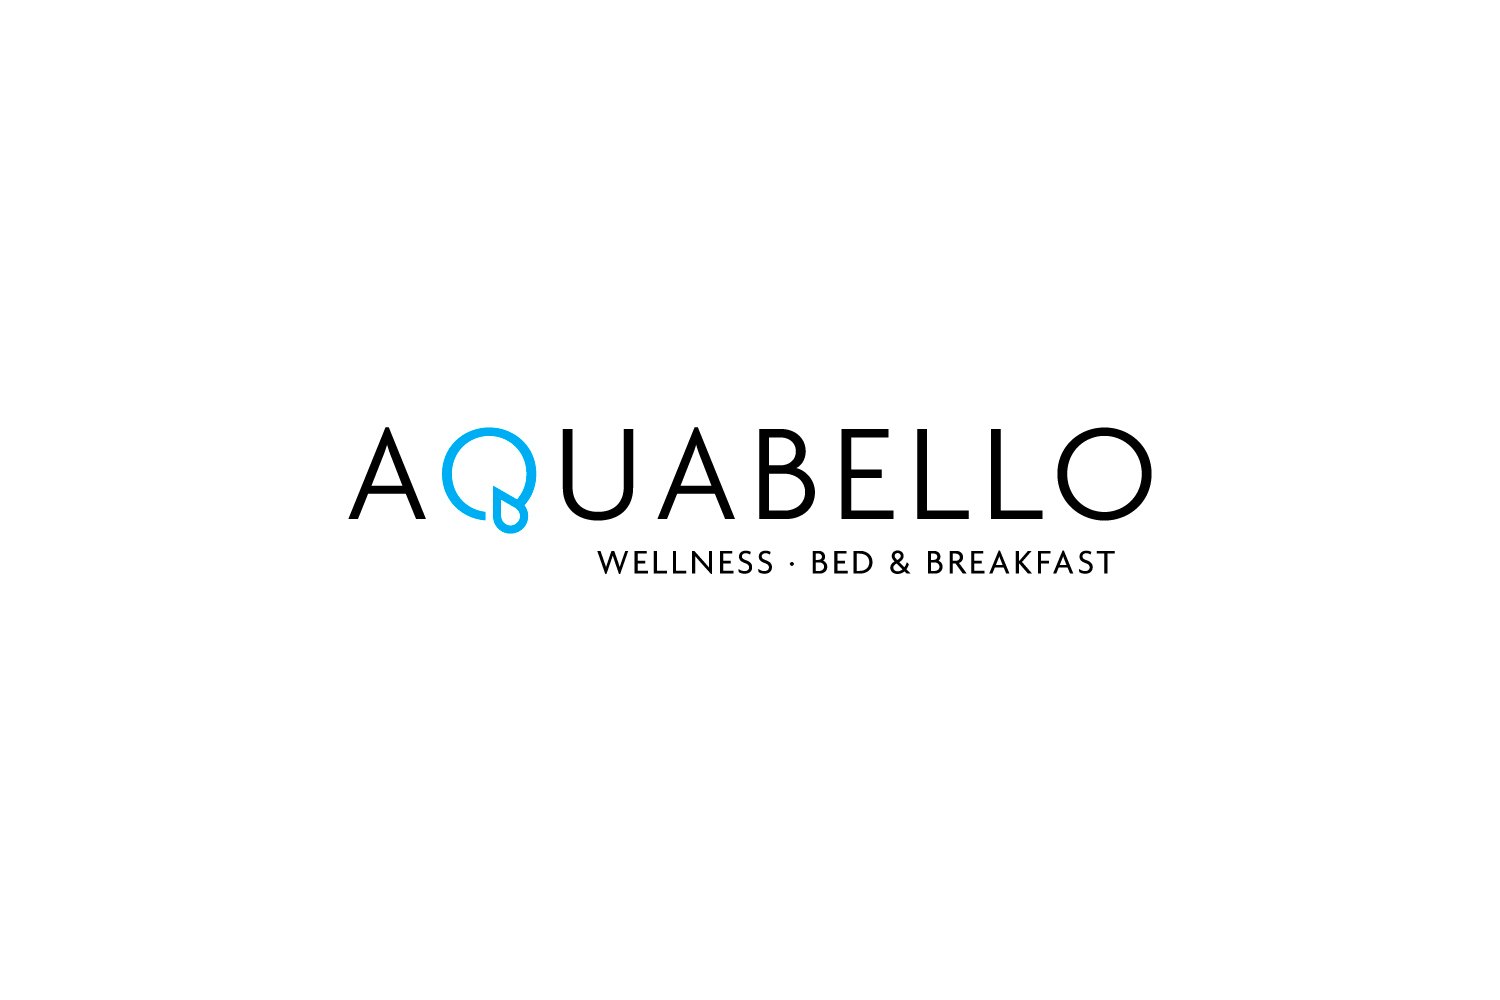 Compleet wellnessarrangement + buitenzwembad voor 2 bij Aquabello!